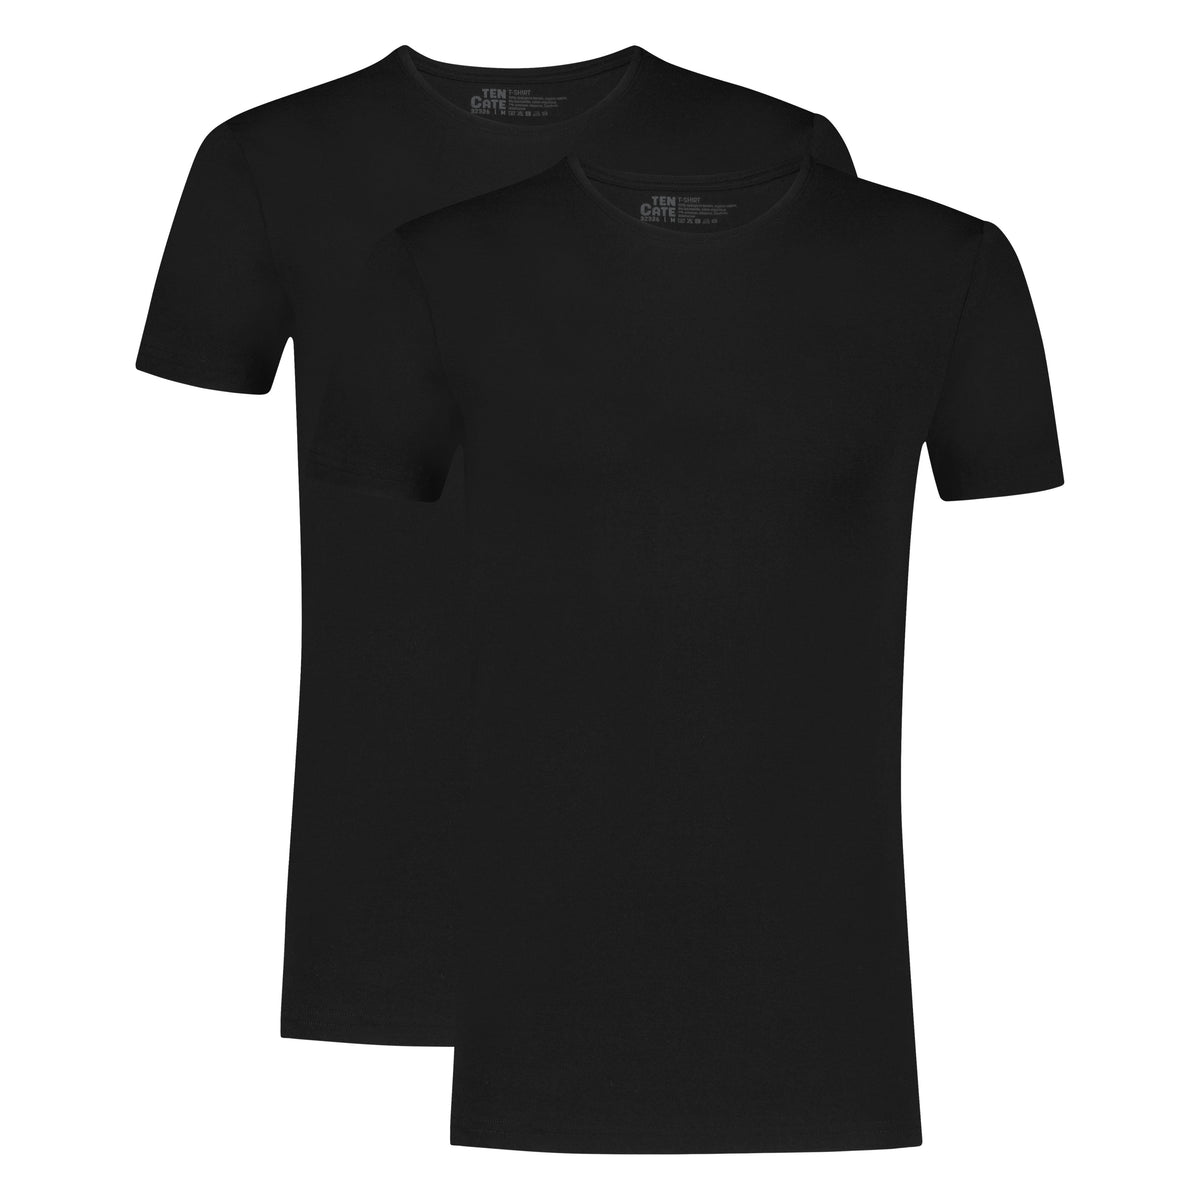 Ten Cate - 32325 - Basic V-Neck Shirt 2-pack - Black Shirt Ten Cate 